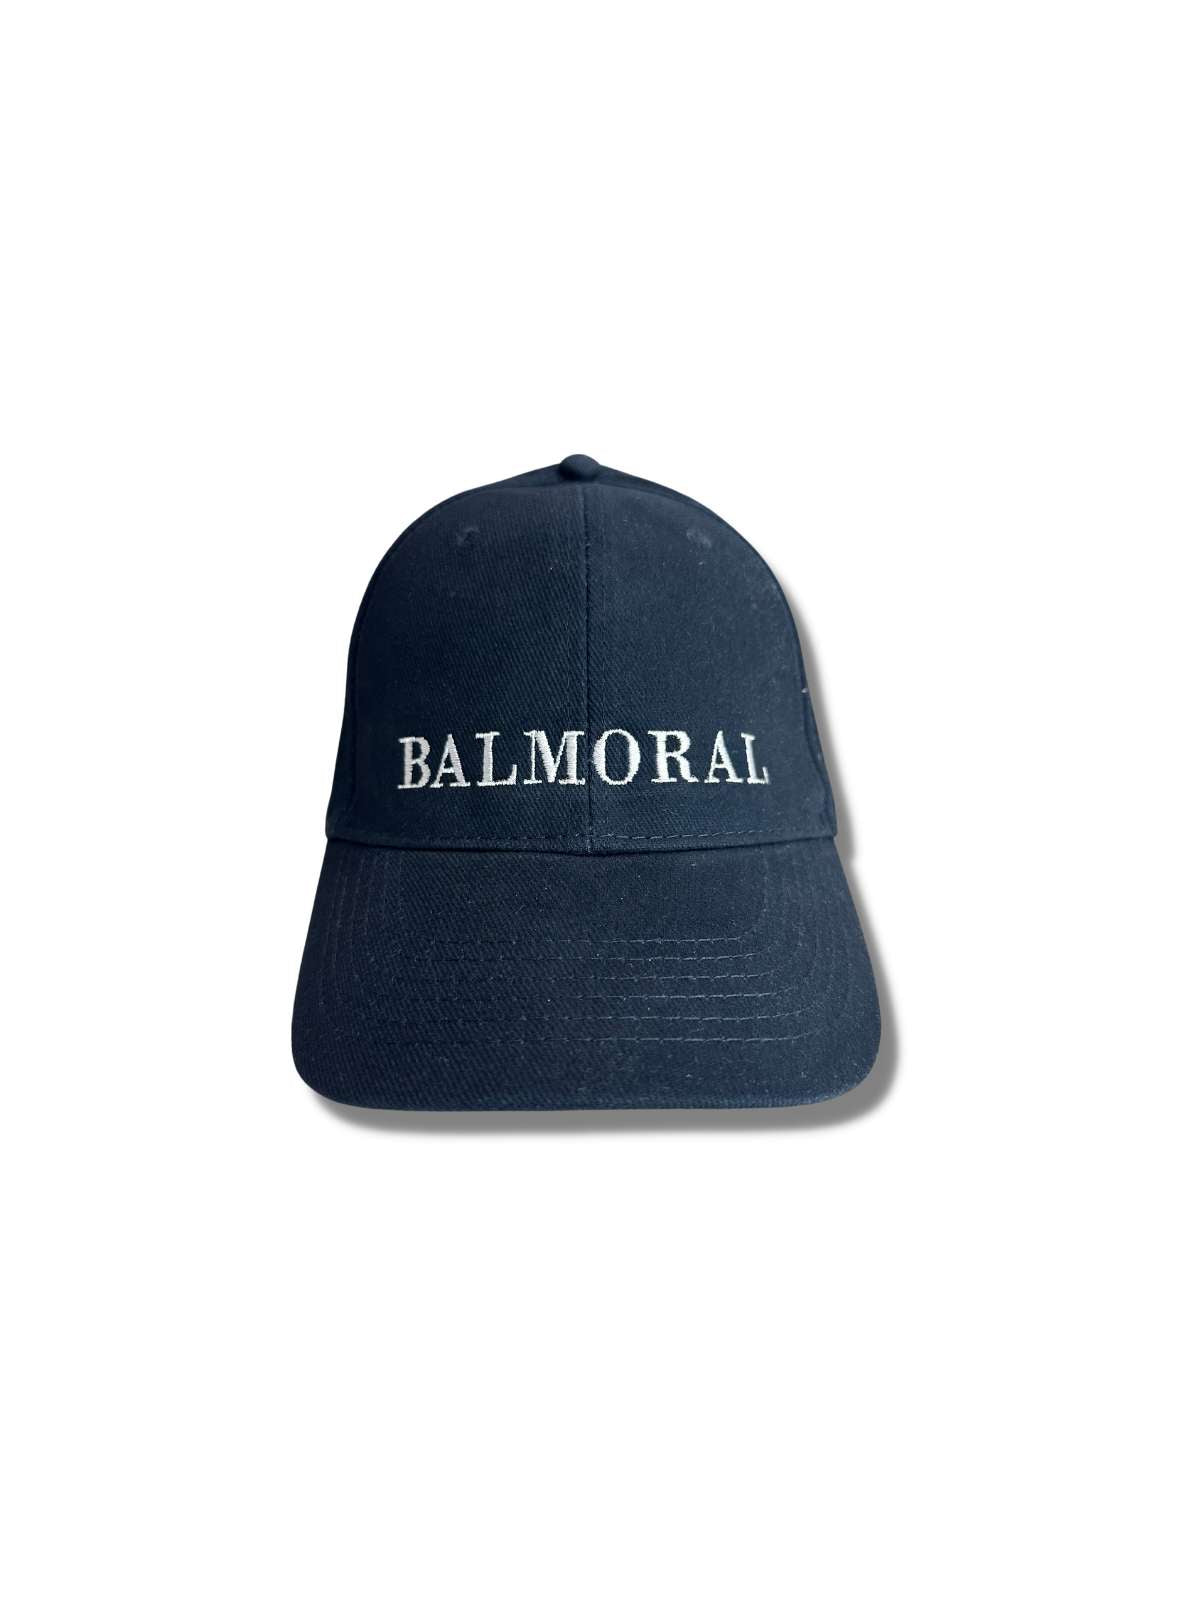 Balmoral Unisex Cotton Cap - Navy